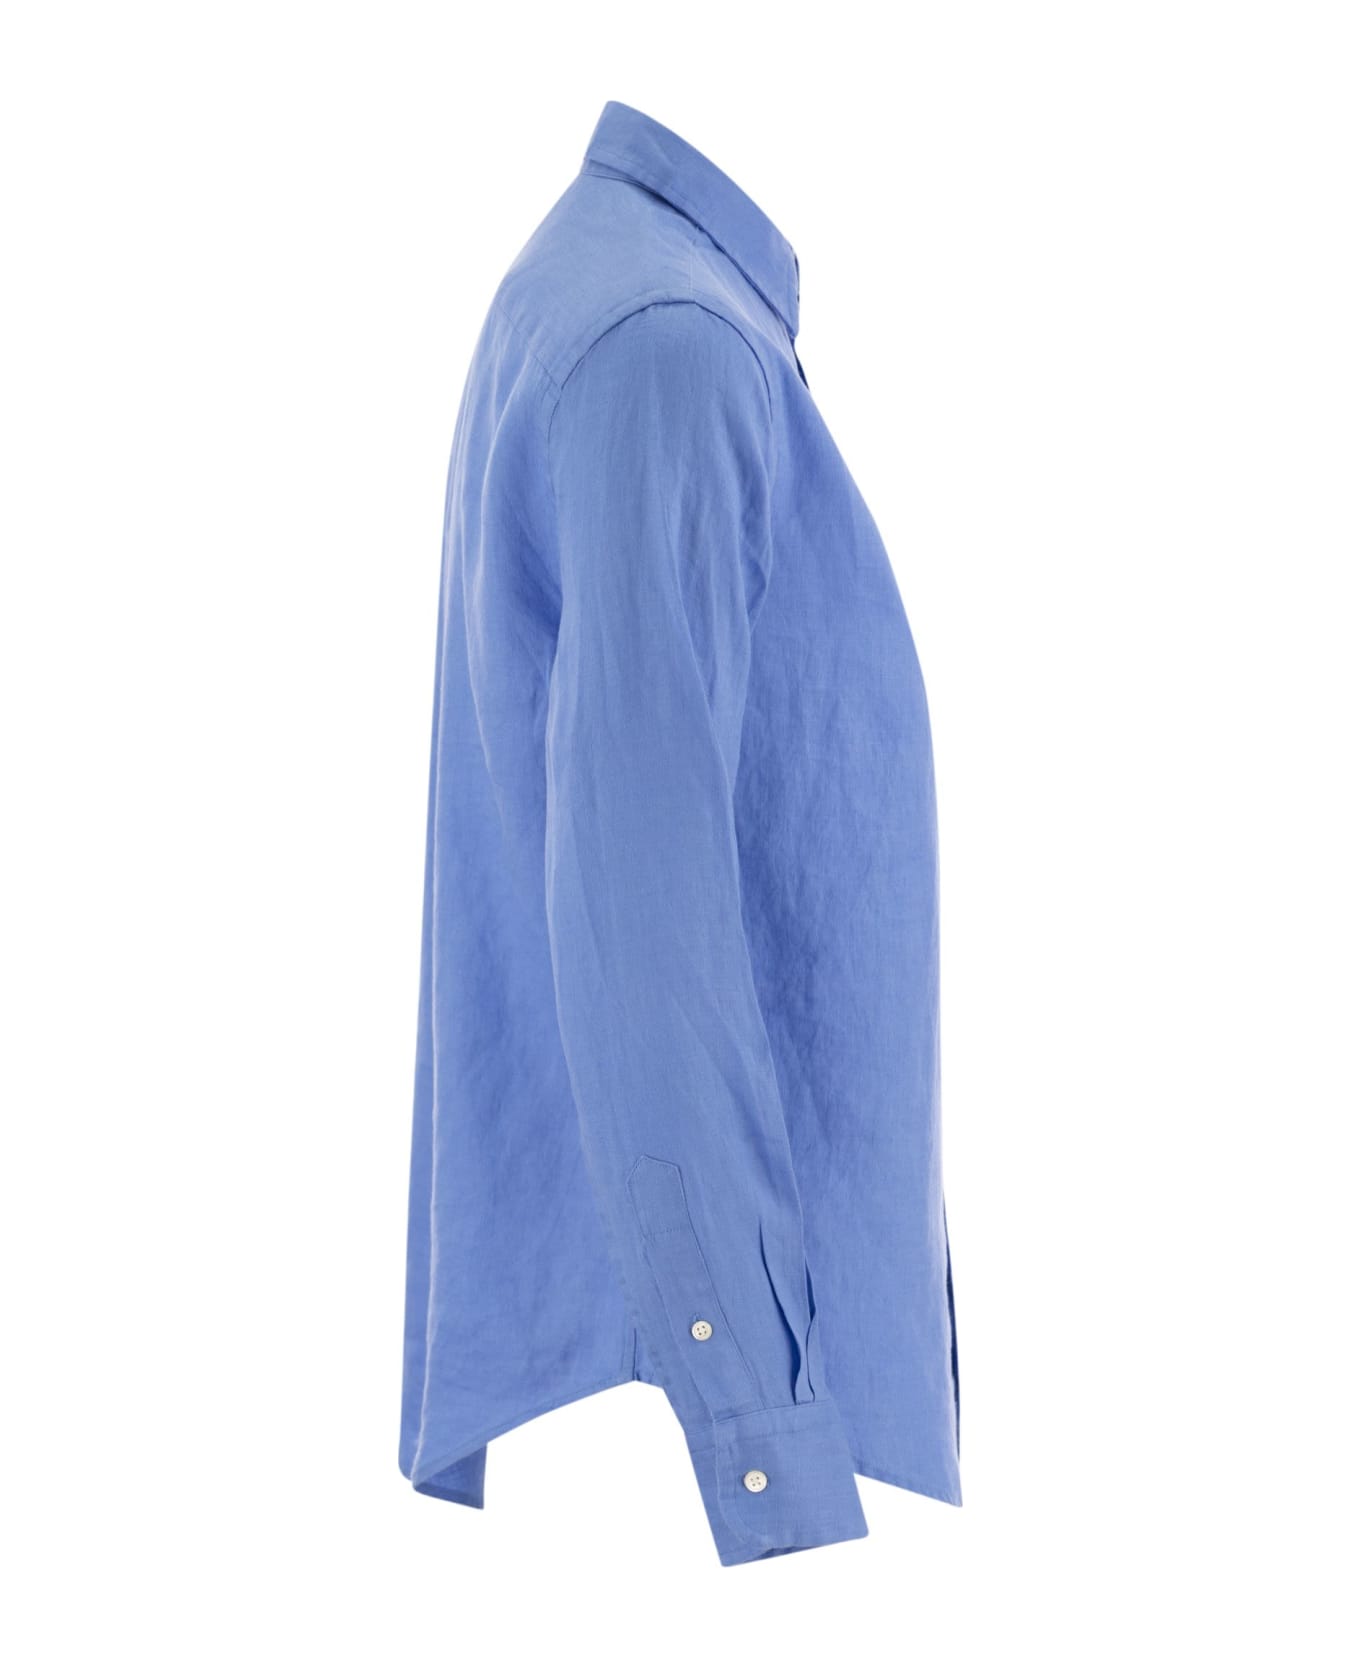 Polo Ralph Lauren Linen Shirt - Light Blue